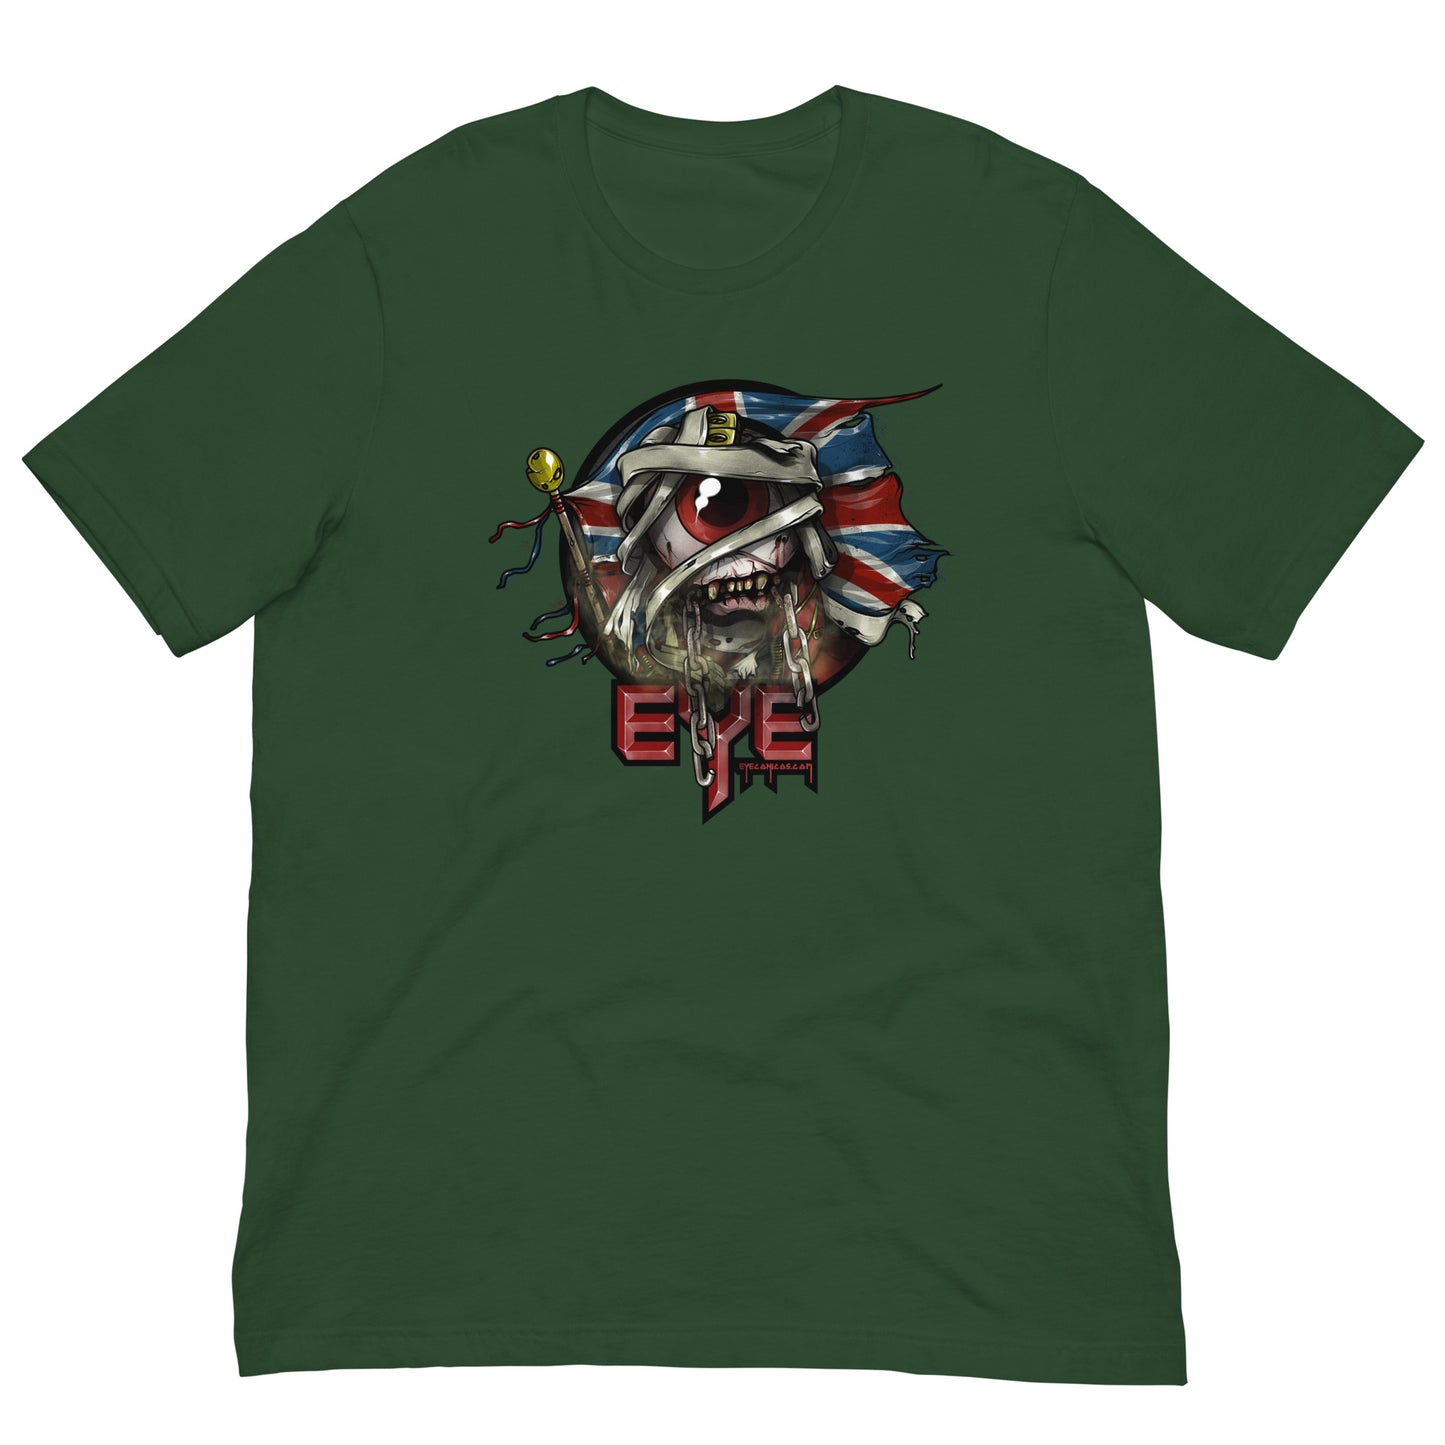 Eyeron Maiden T-Shirt